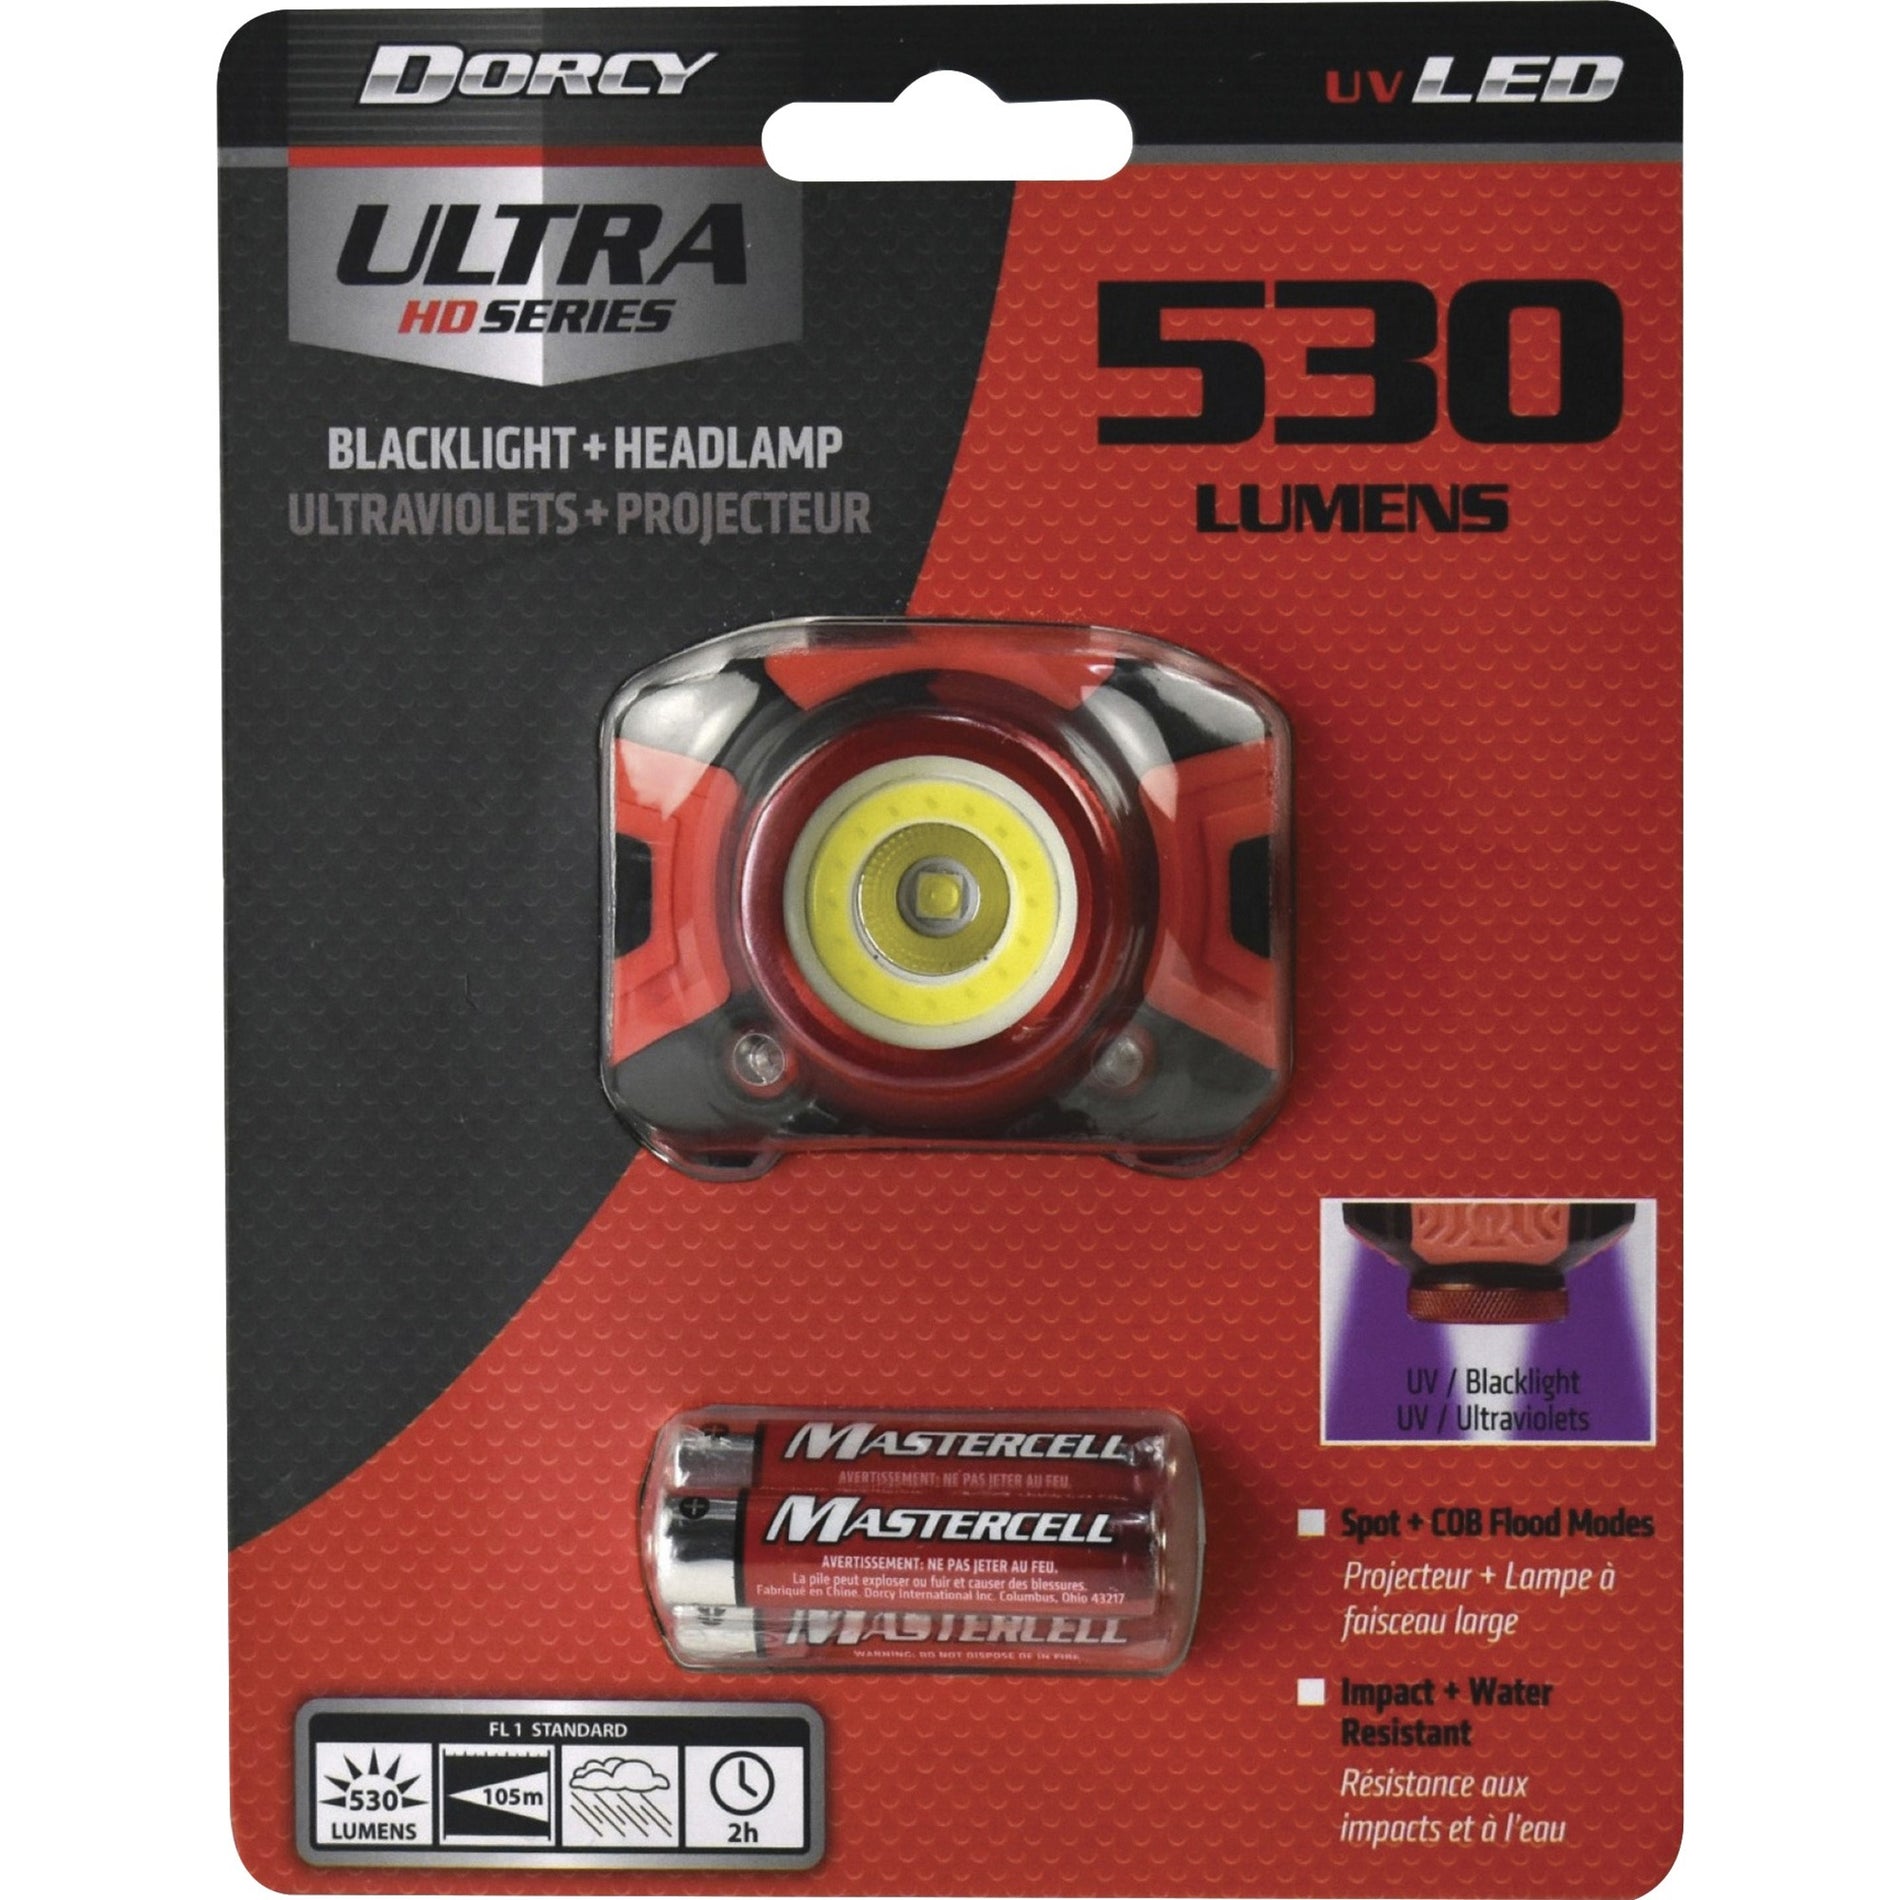 Dorcy 414335 Ultra HD 530 Lumen Kopflampe wasserdicht AAA-Batterie betrieben